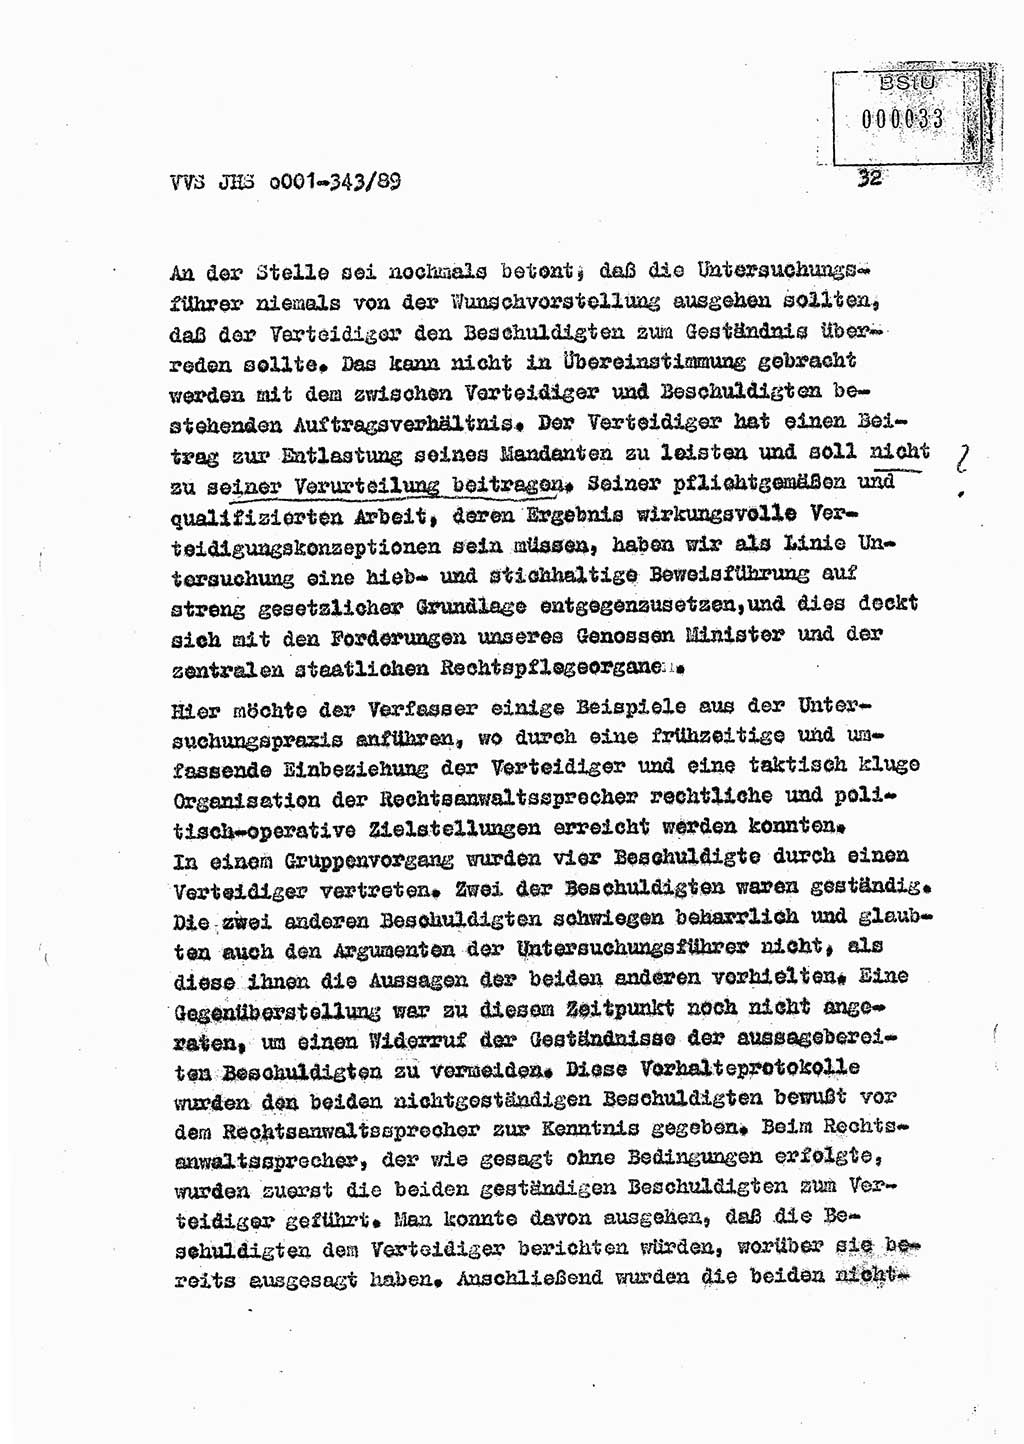 Diplomarbeit Offiziersschüler Axel Henschke (HA Ⅸ/9), Ministerium für Staatssicherheit (MfS) [Deutsche Demokratische Republik (DDR)], Juristische Hochschule (JHS), Vertrauliche Verschlußsache (VVS) o001-343/89, Potsdam 1989, Seite 32 (Dipl.-Arb. MfS DDR JHS VVS o001-343/89 1989, S. 32)